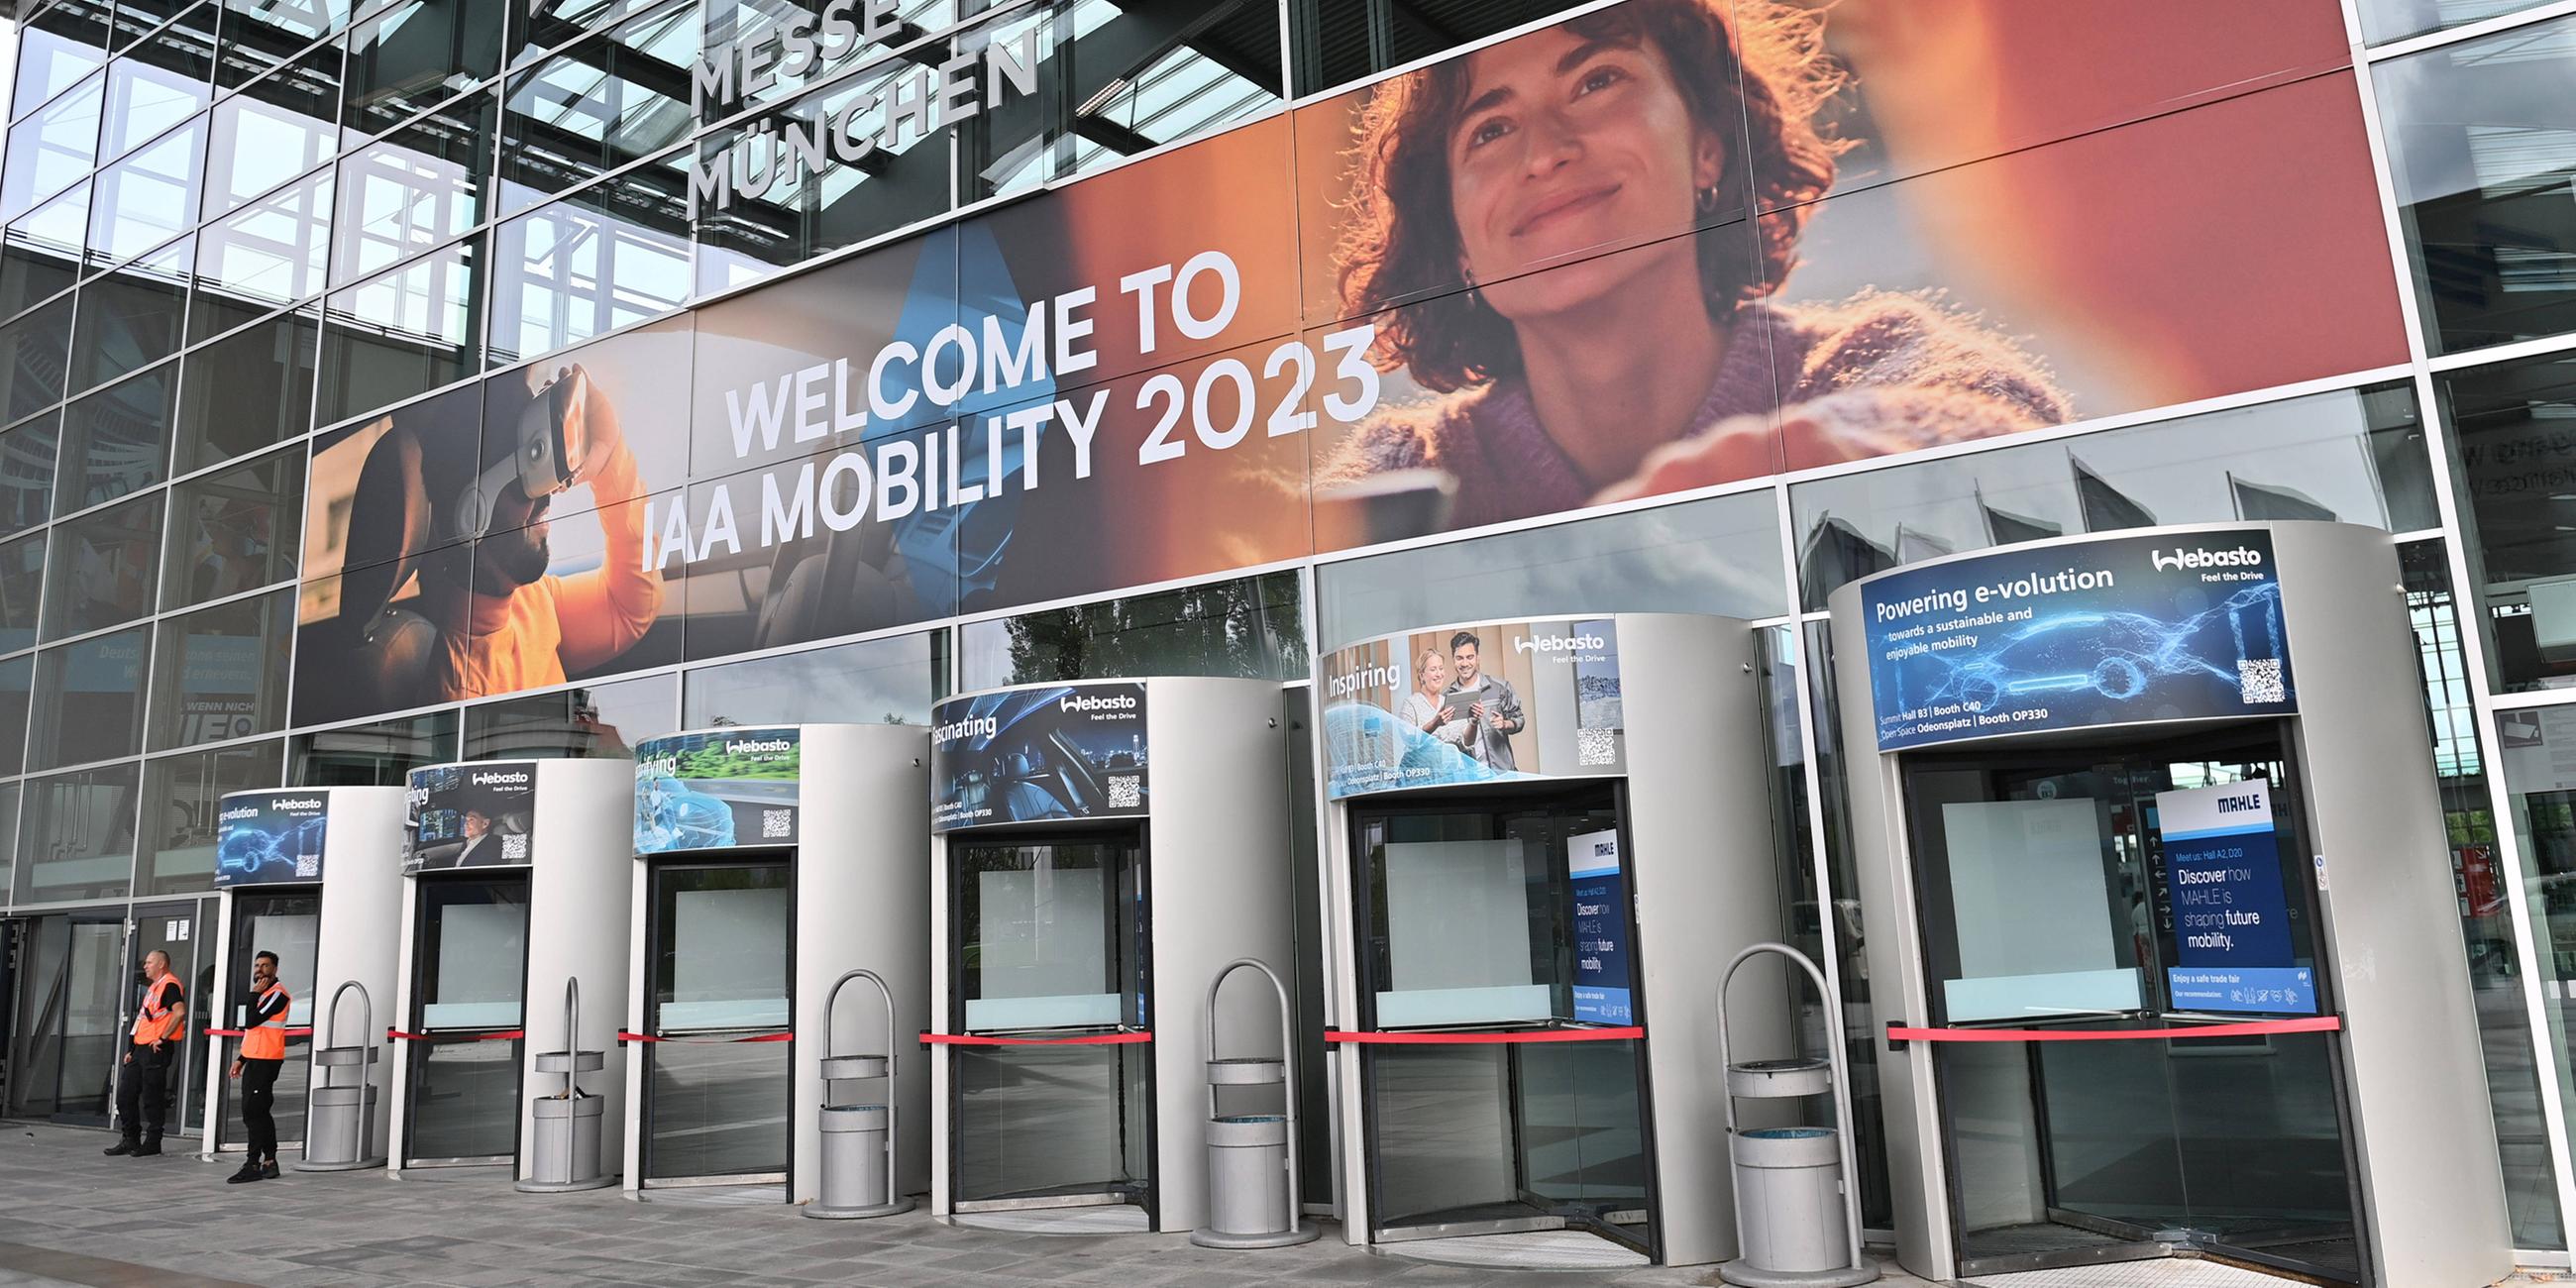 Eingang zur IAA Mobility 2023 in der Messe Riem in München